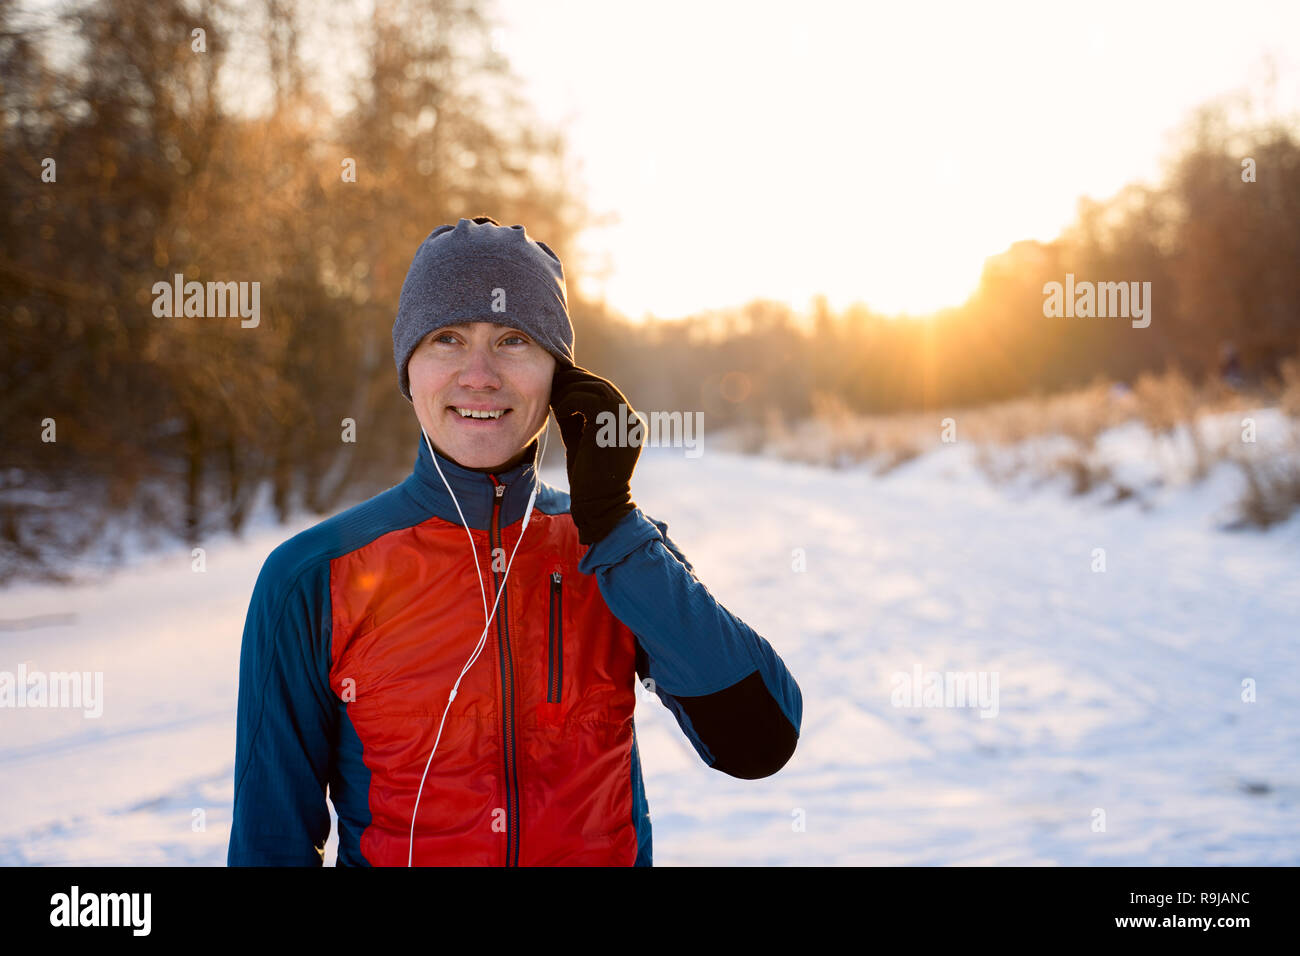 Portrait of a runner dressed in warm sportswear Stock Photo